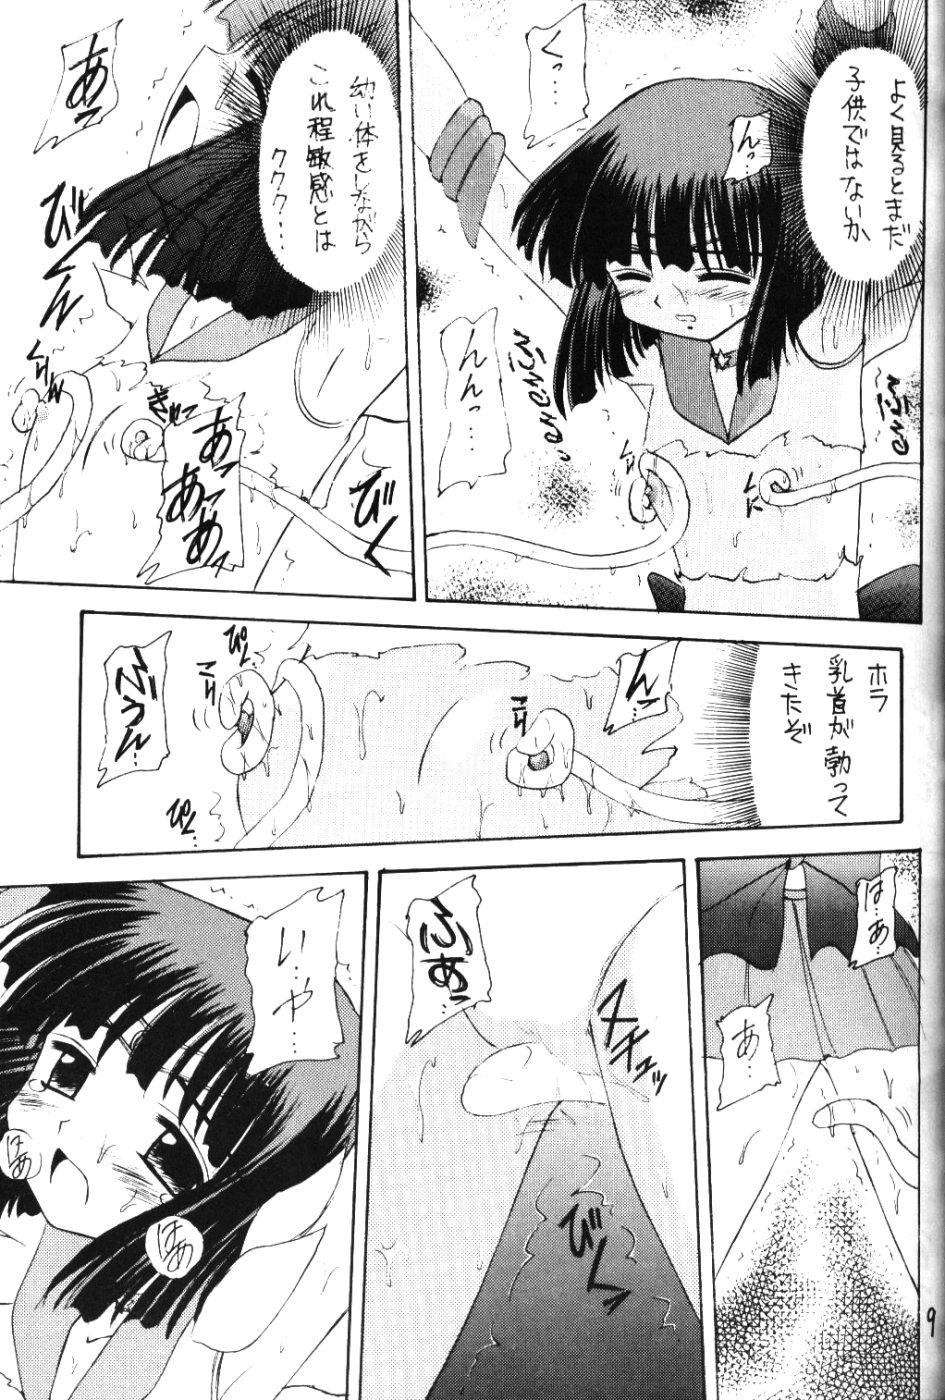 Cock Suck Hotaru VI - Sailor moon Peeing - Page 8